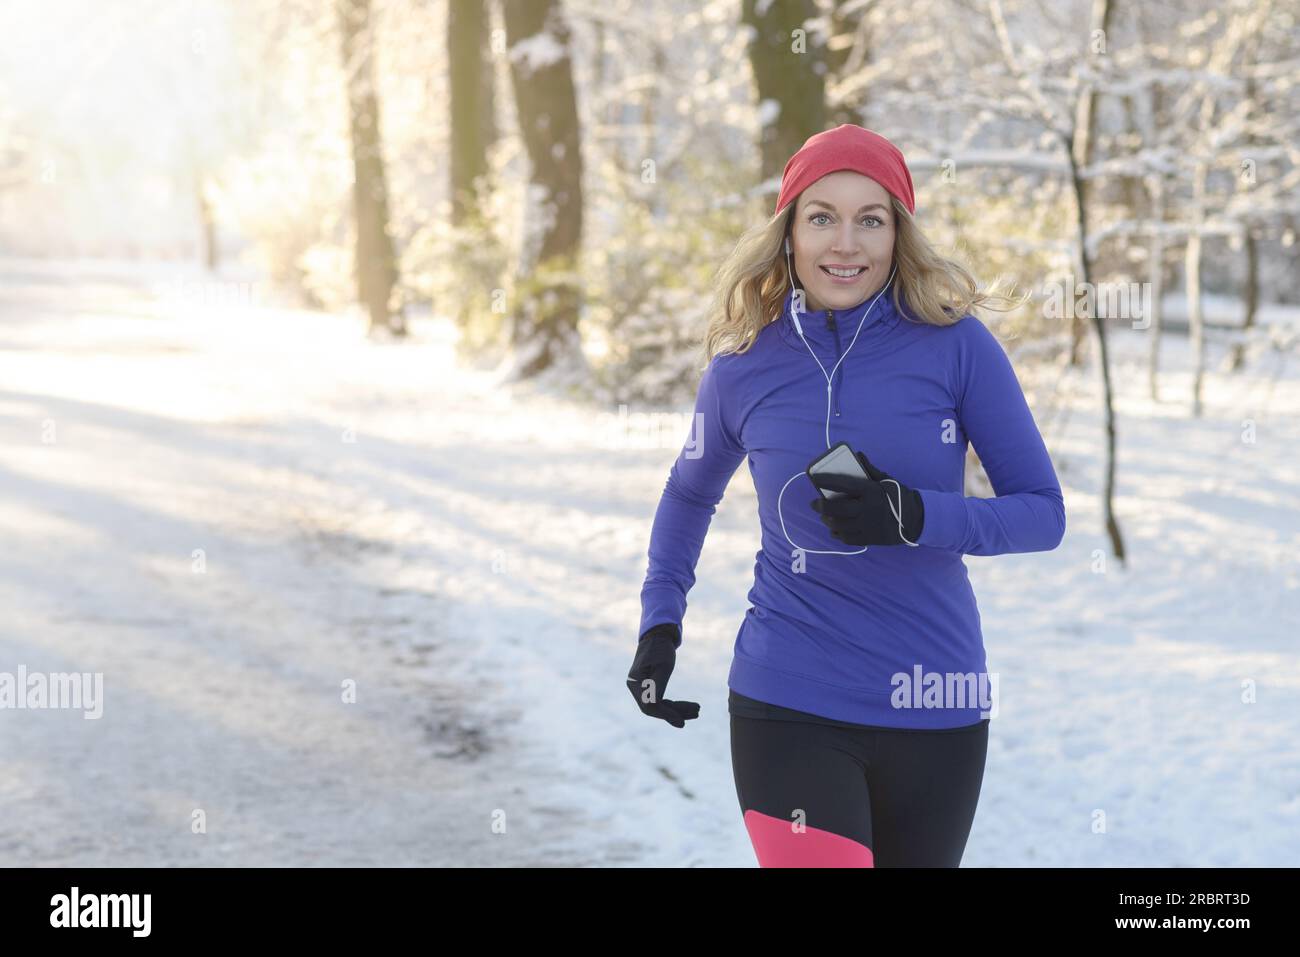 Foto a metà corpo di una bella donna atletica che fa jogging in inverno con auricolari e abbigliamento invernale, sorridendo alla fotocamera, con spazio fotocopie Foto Stock